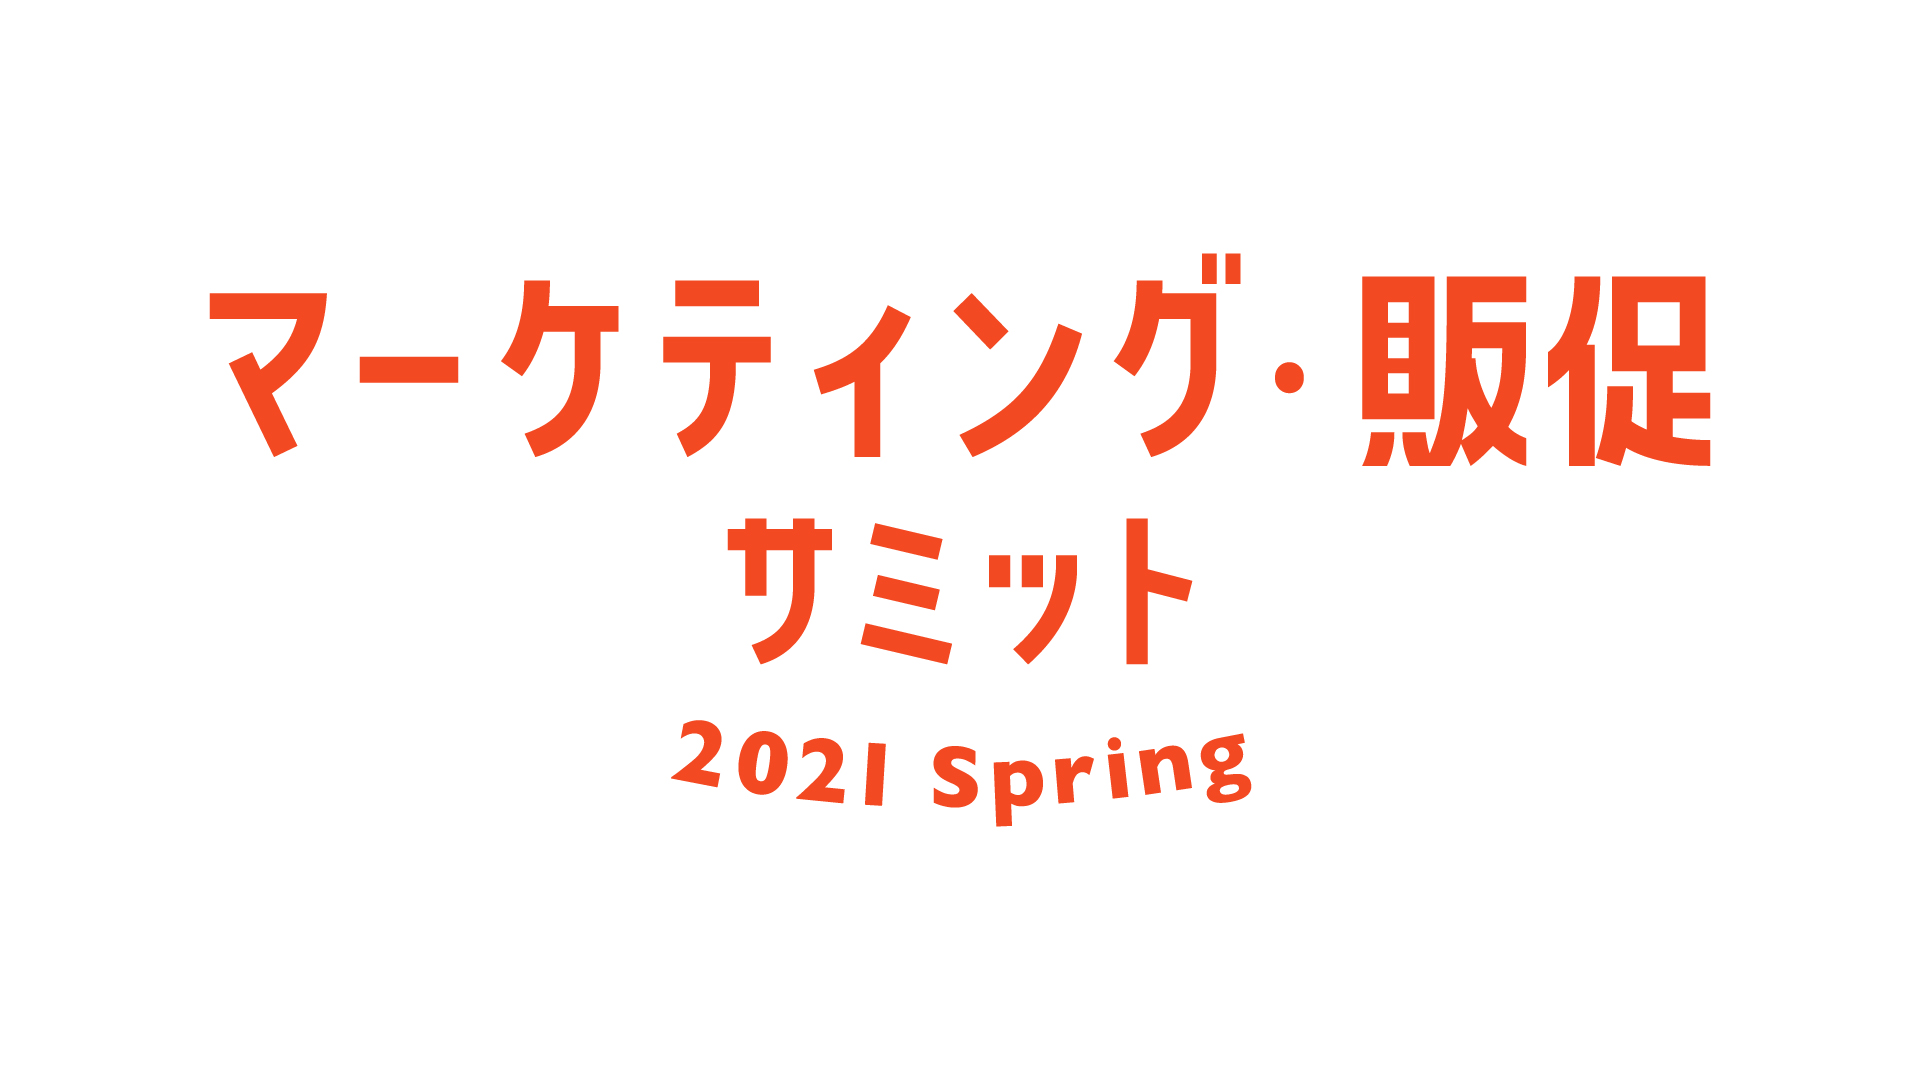 本日より開催！オンライン展示会『マーケティング・販促サミット 2021 Spring』に出展いたします。